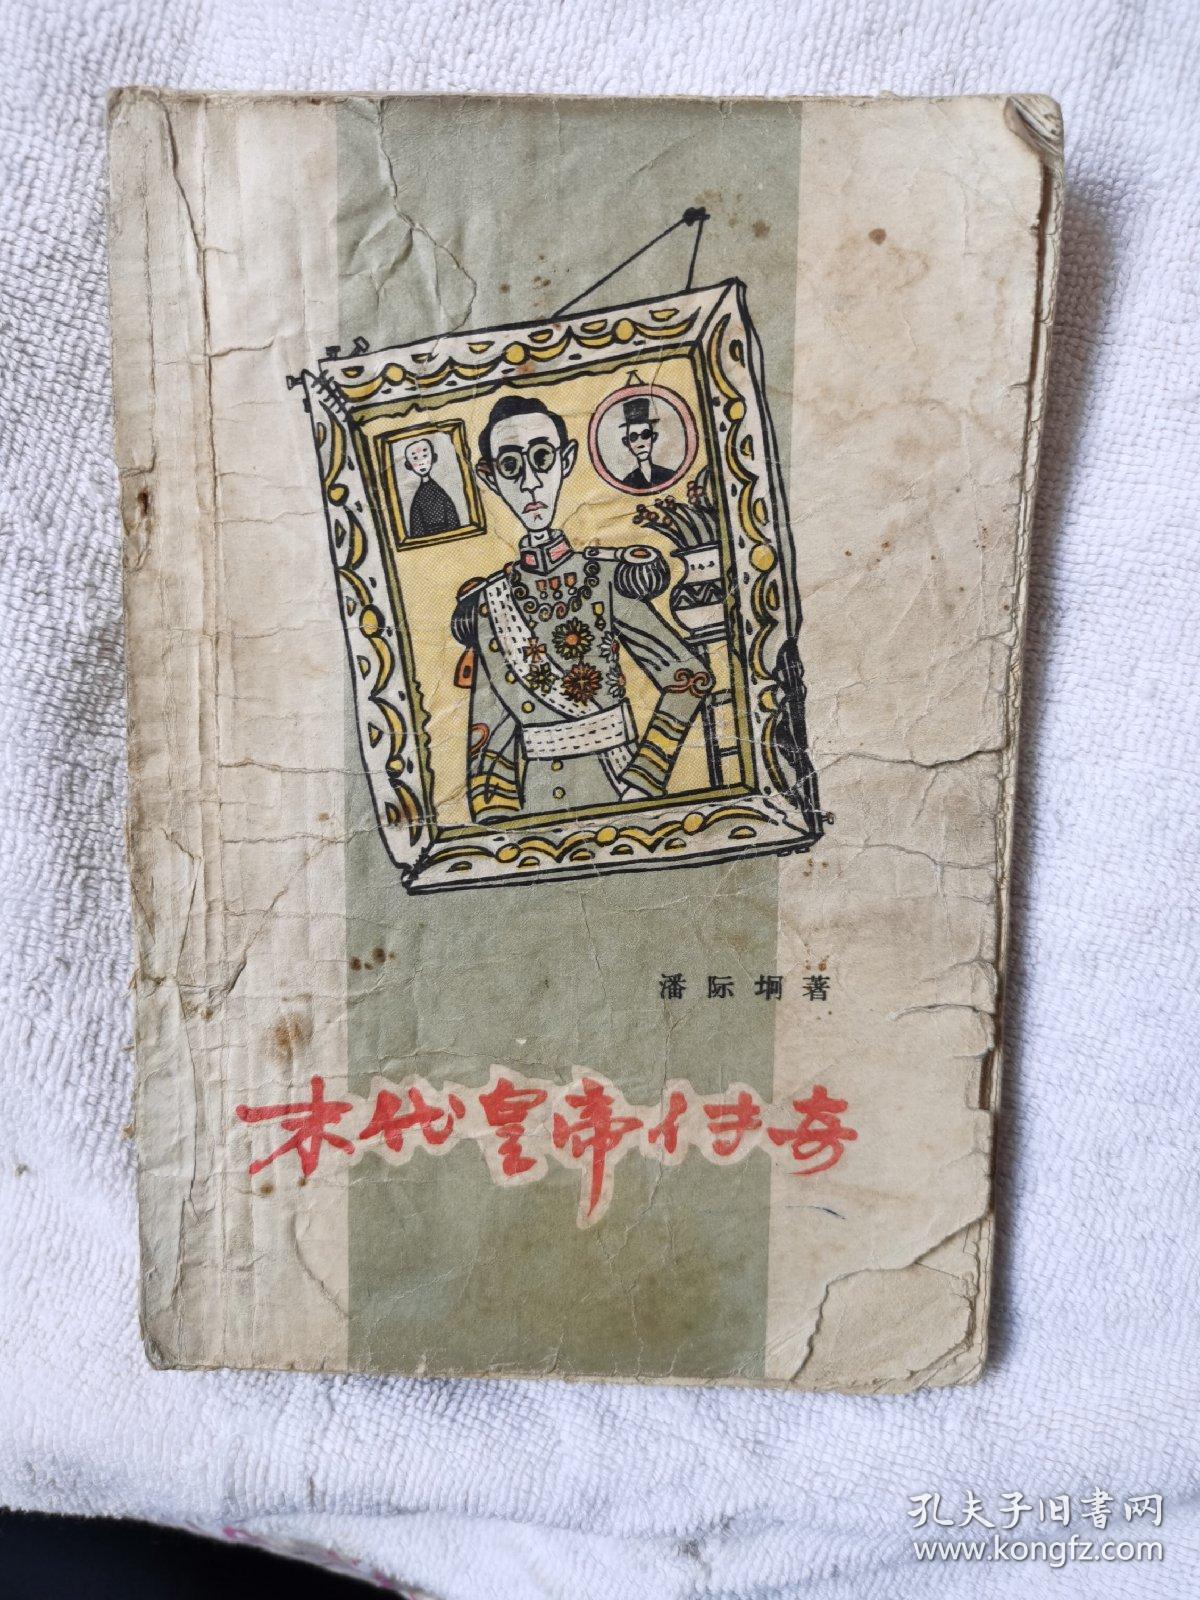 末代皇帝传奇 黄永玉装帧插图，内多老照片和插图